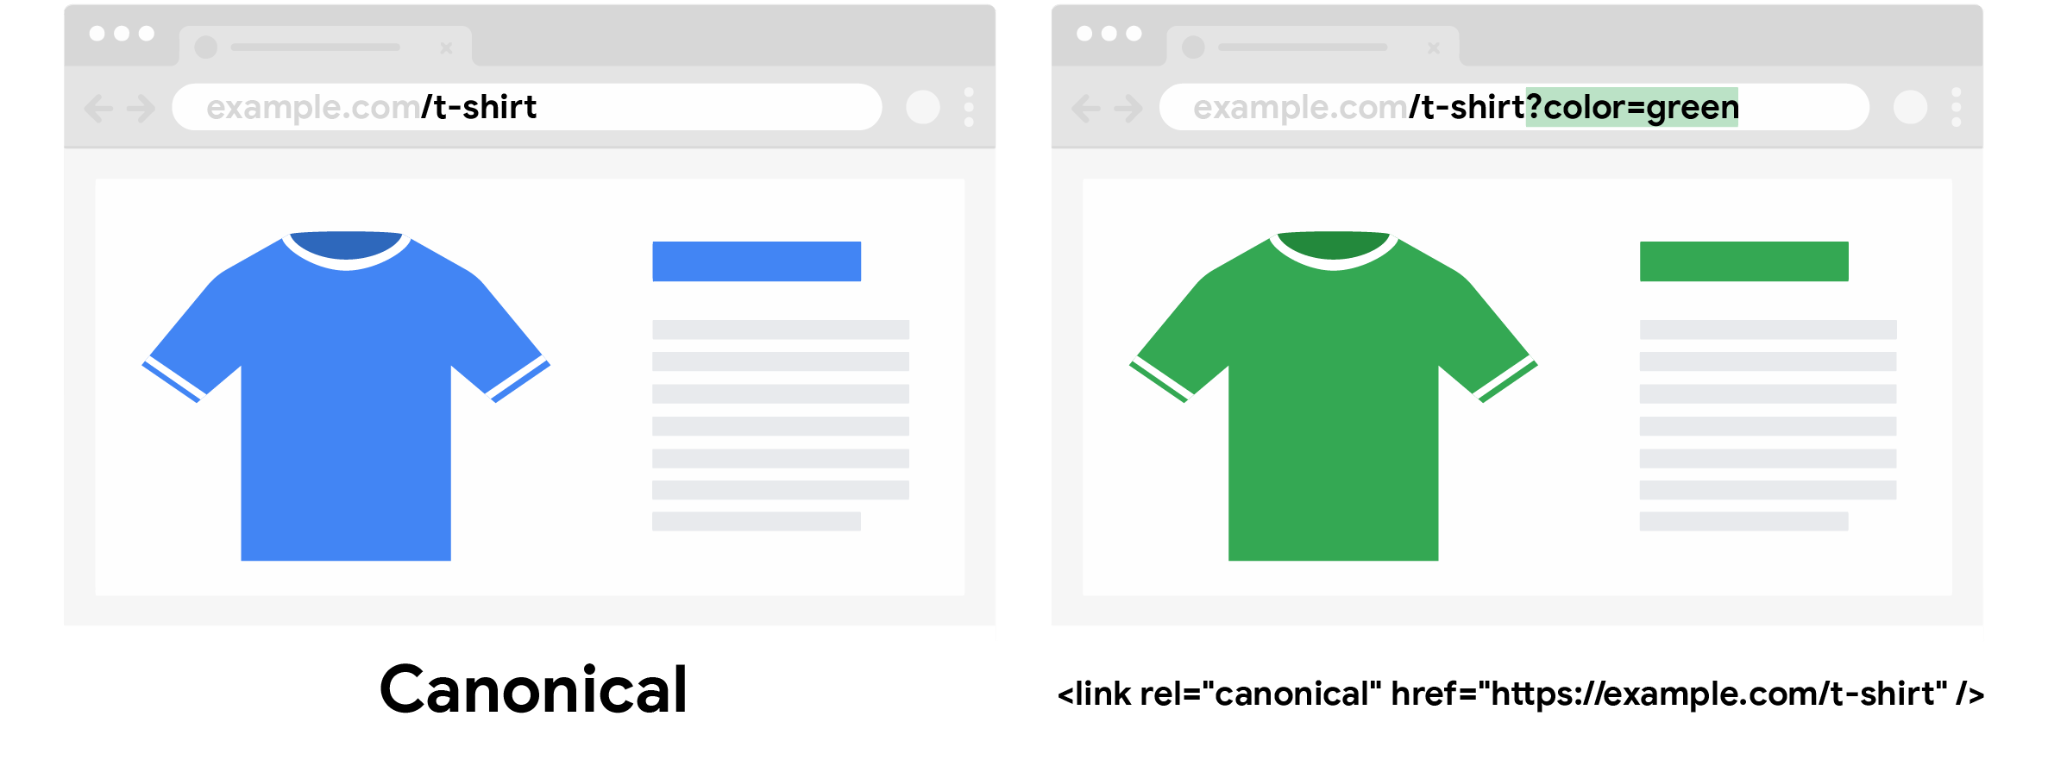 Una camiseta canónica de color azul sin parámetro de consulta de color y una camiseta no canónica de color verde con un parámetro de consulta de color especificado